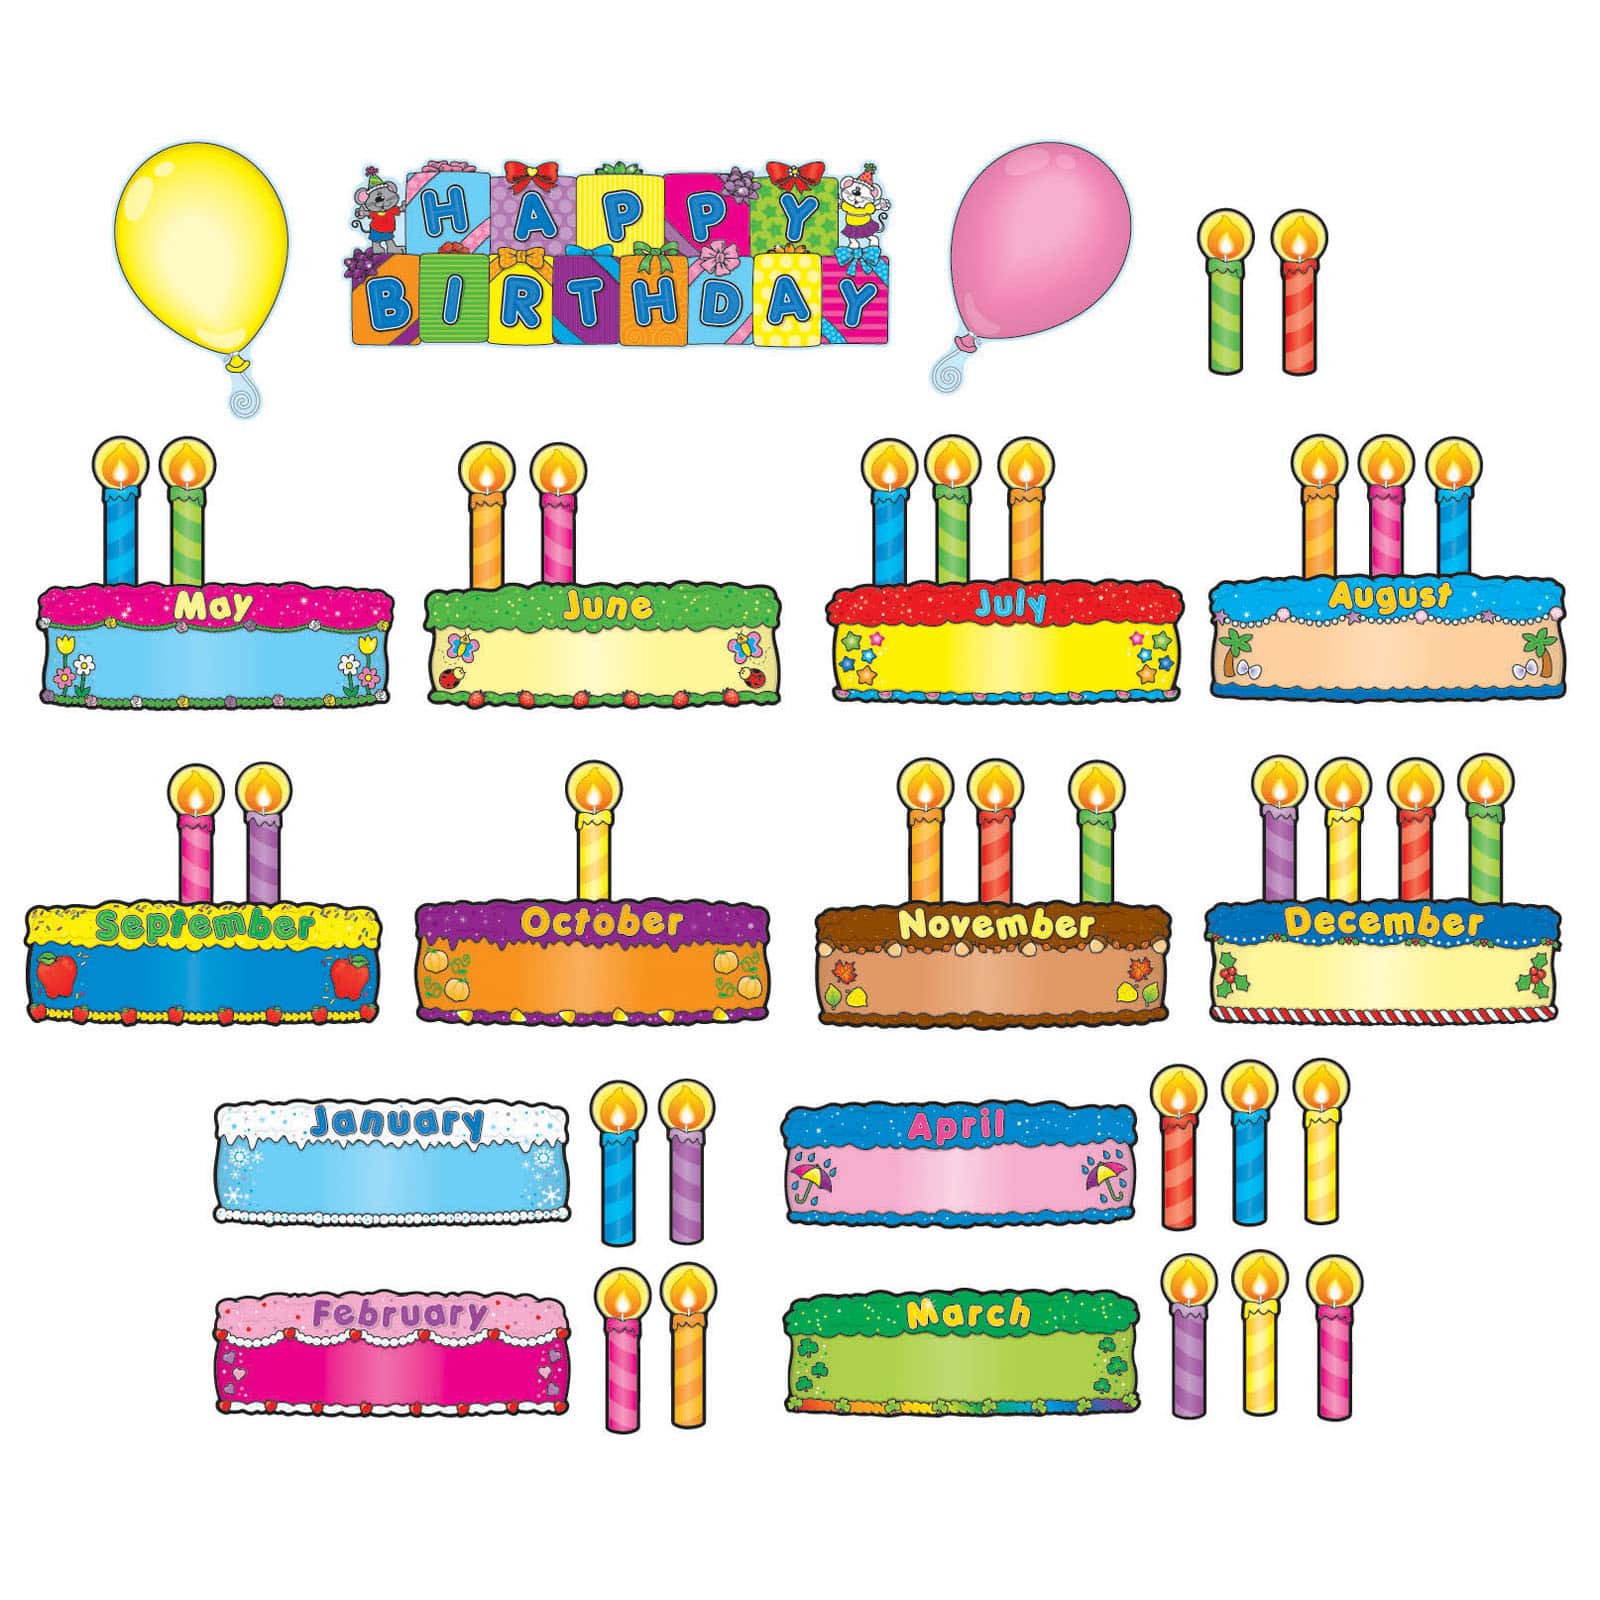 Shop for Carson-Dellosa™ Birthday Cakes Mini Bulletin Board Set at Michaels